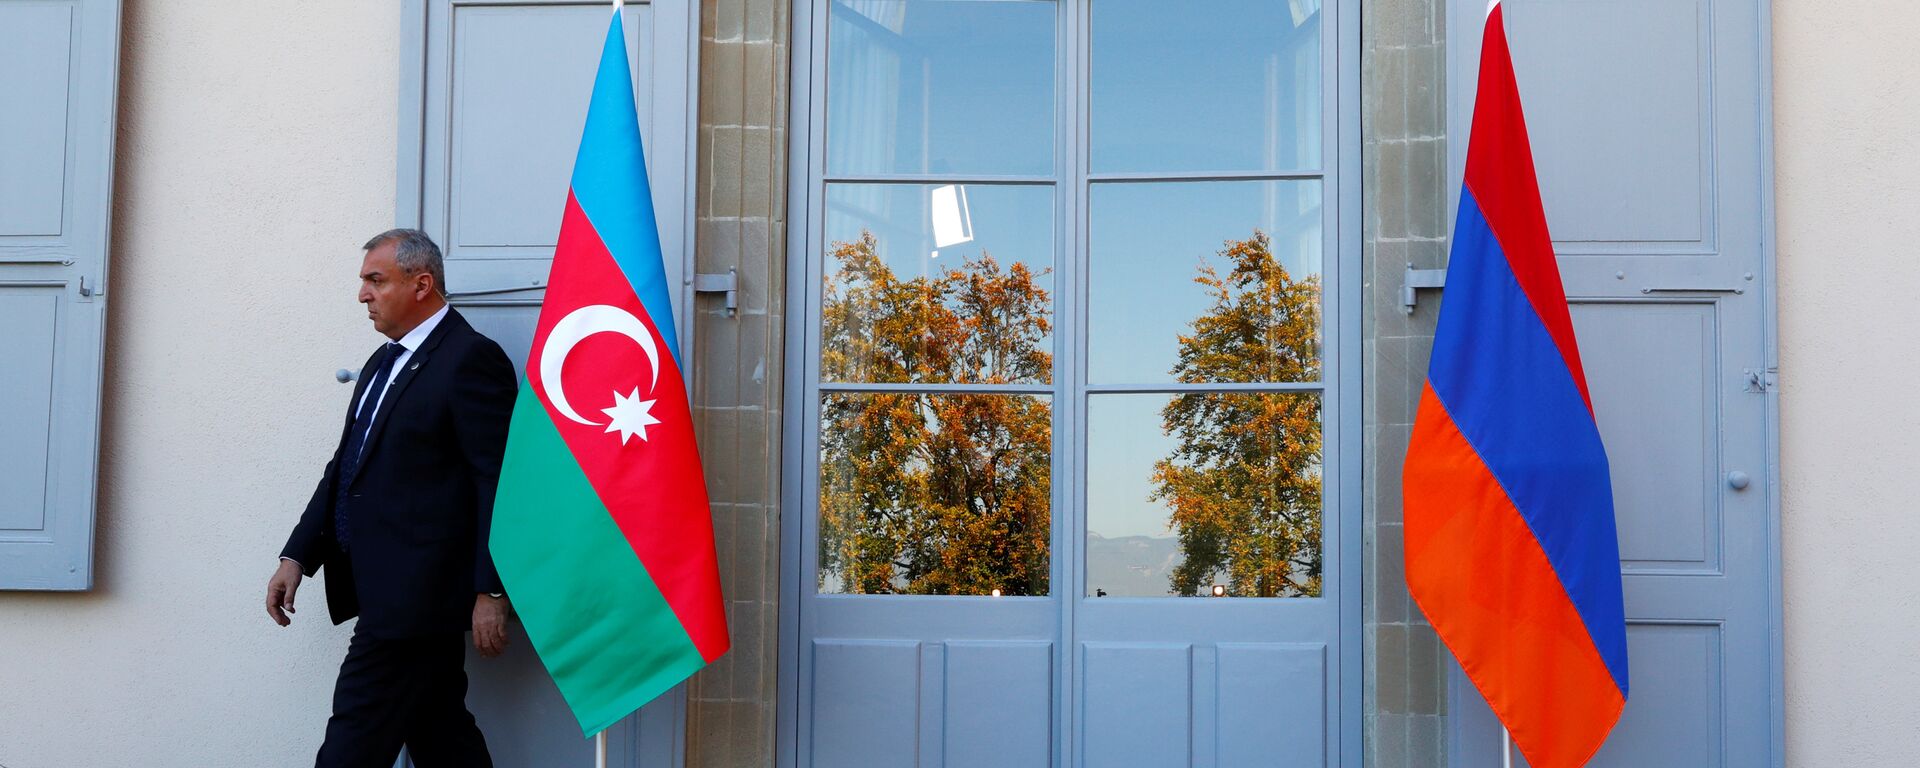 Охранник проходит мимо азербайджанского (слева) и армянского флага в Женеве, фото из архива - Sputnik Азербайджан, 1920, 03.12.2021